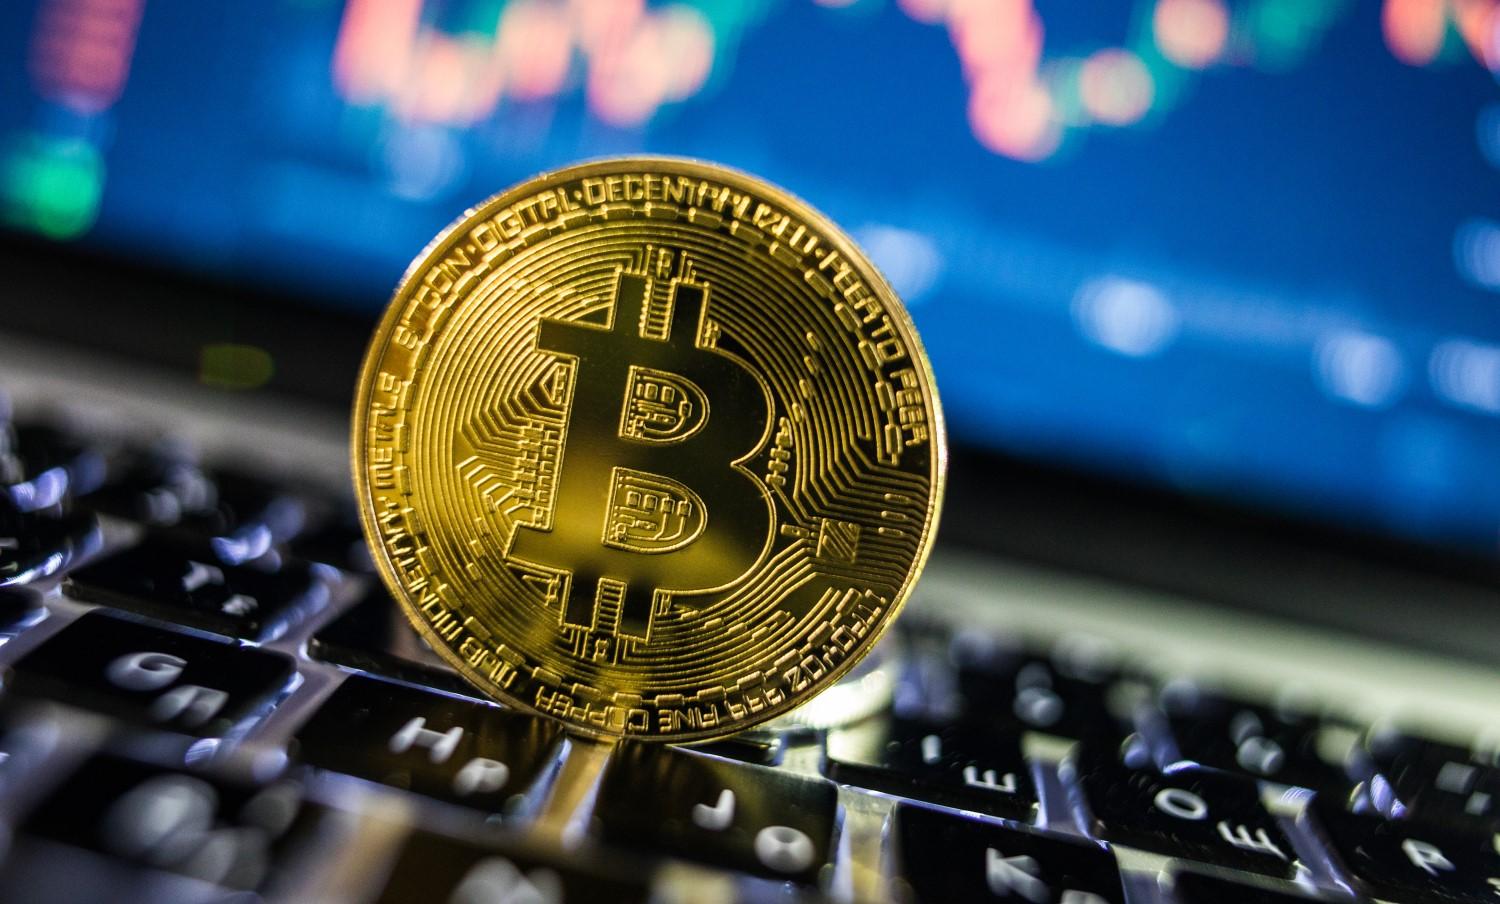 "Bitcoin: Impacto incierto"